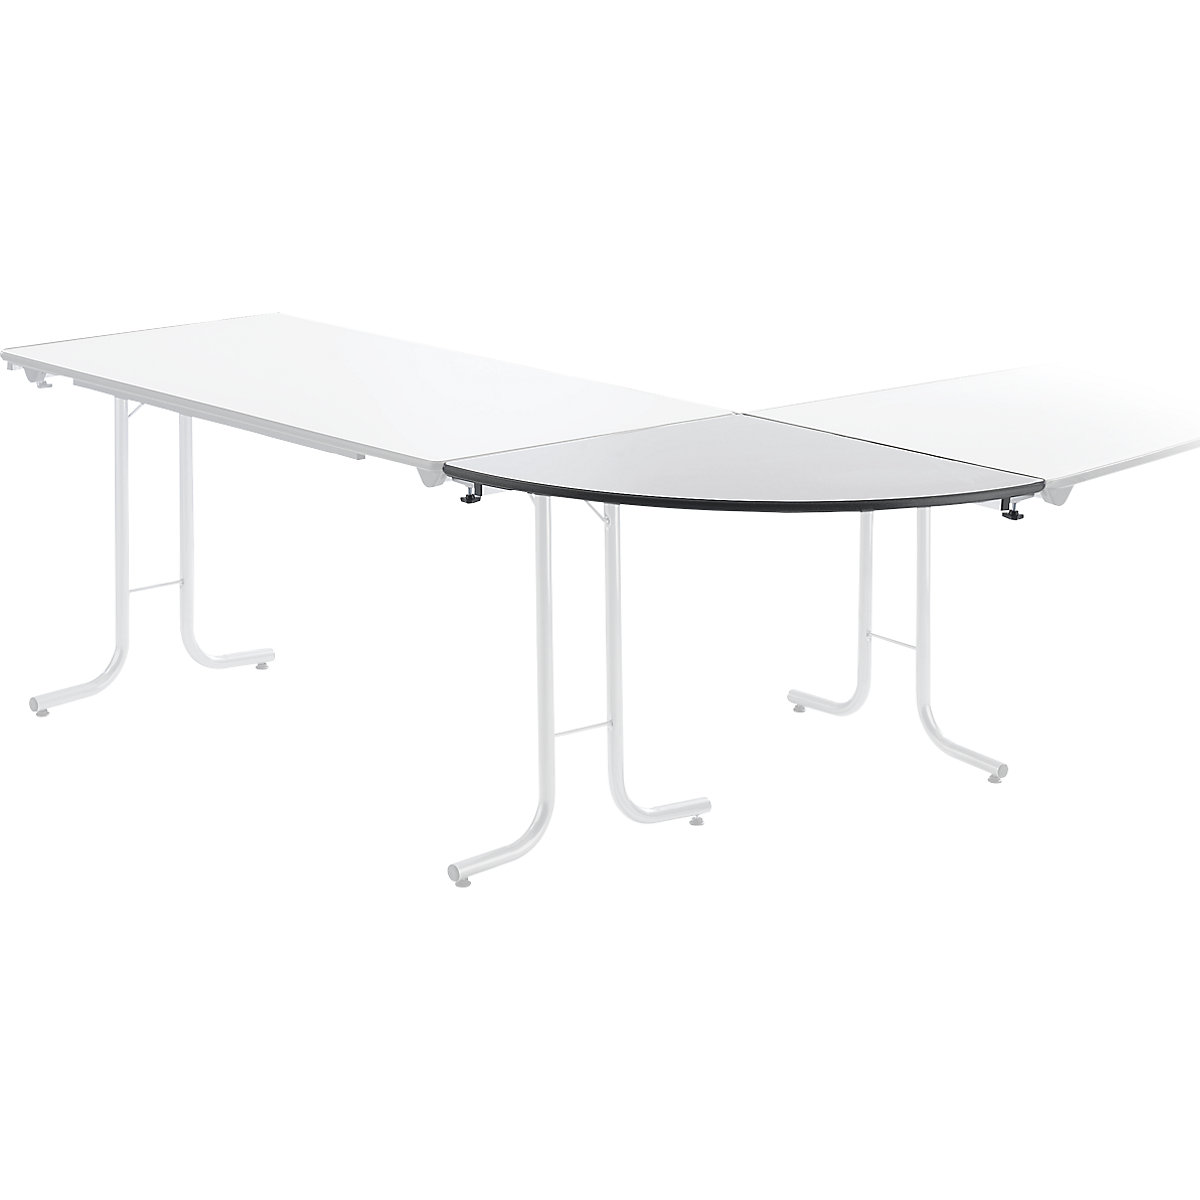 Dodatkowy stół do stołu składanego, blat: ćwierćkoło, 700 x 700 mm, szkielet w kolorze aluminium, blat: jasnoszary-3